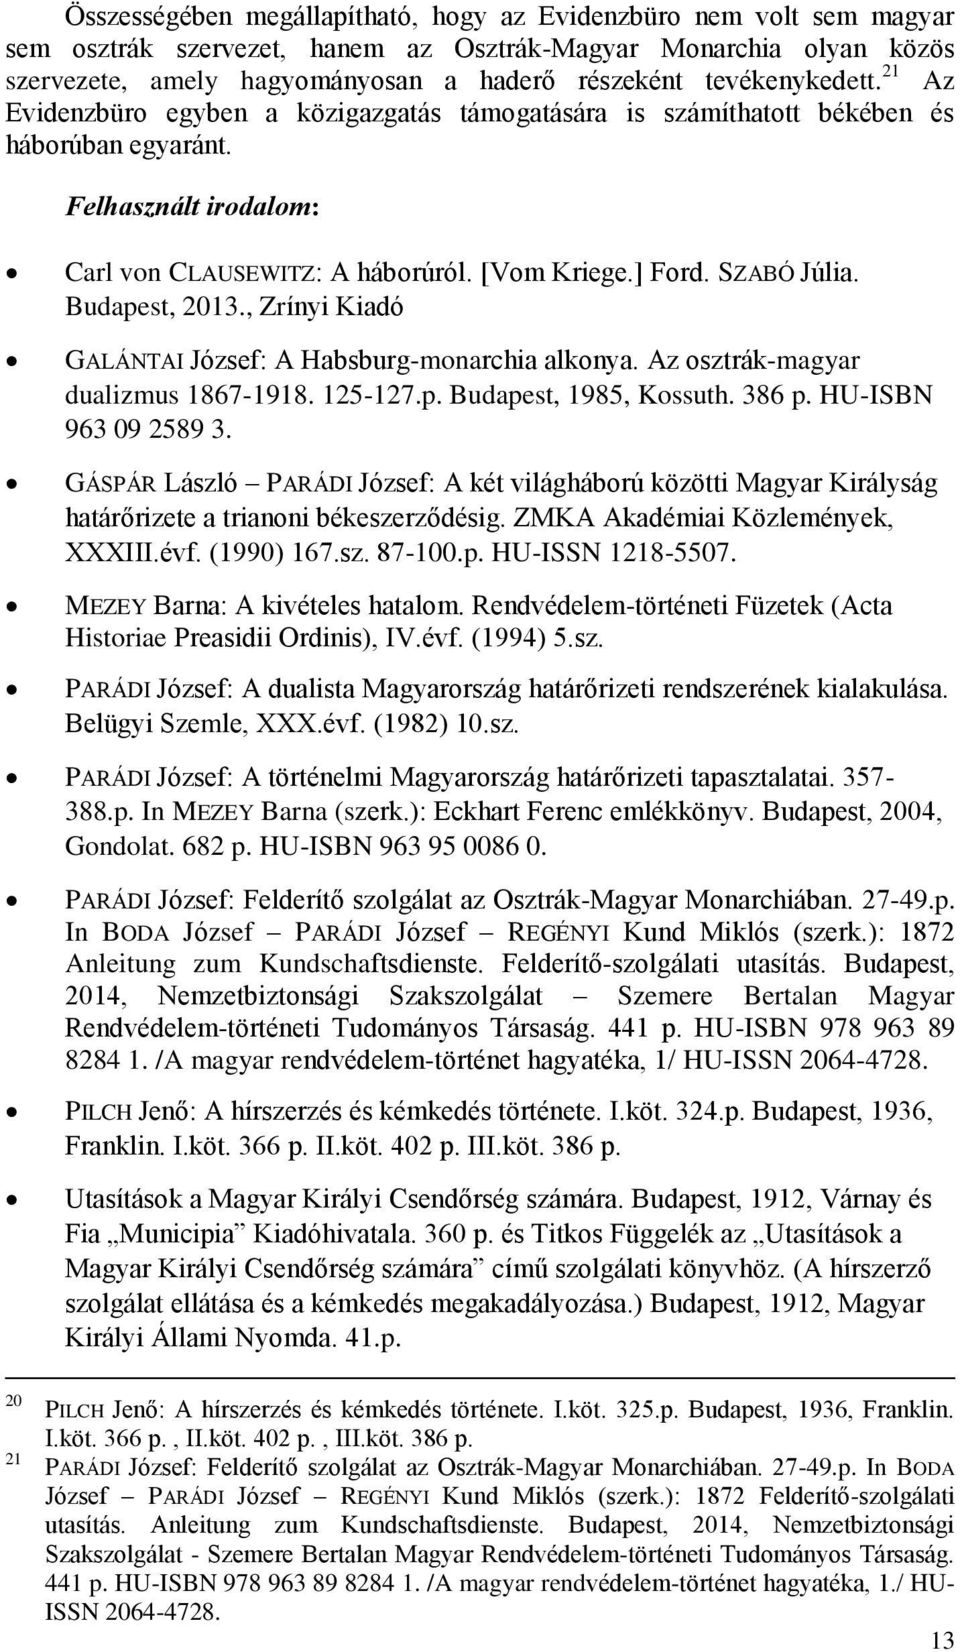 SZABÓ Júlia. Budapest, 2013., Zrínyi Kiadó GALÁNTAI József: A Habsburg-monarchia alkonya. Az osztrák-magyar dualizmus 1867-1918. 125-127.p. Budapest, 1985, Kossuth. 386 p. HU-ISBN 963 09 2589 3.